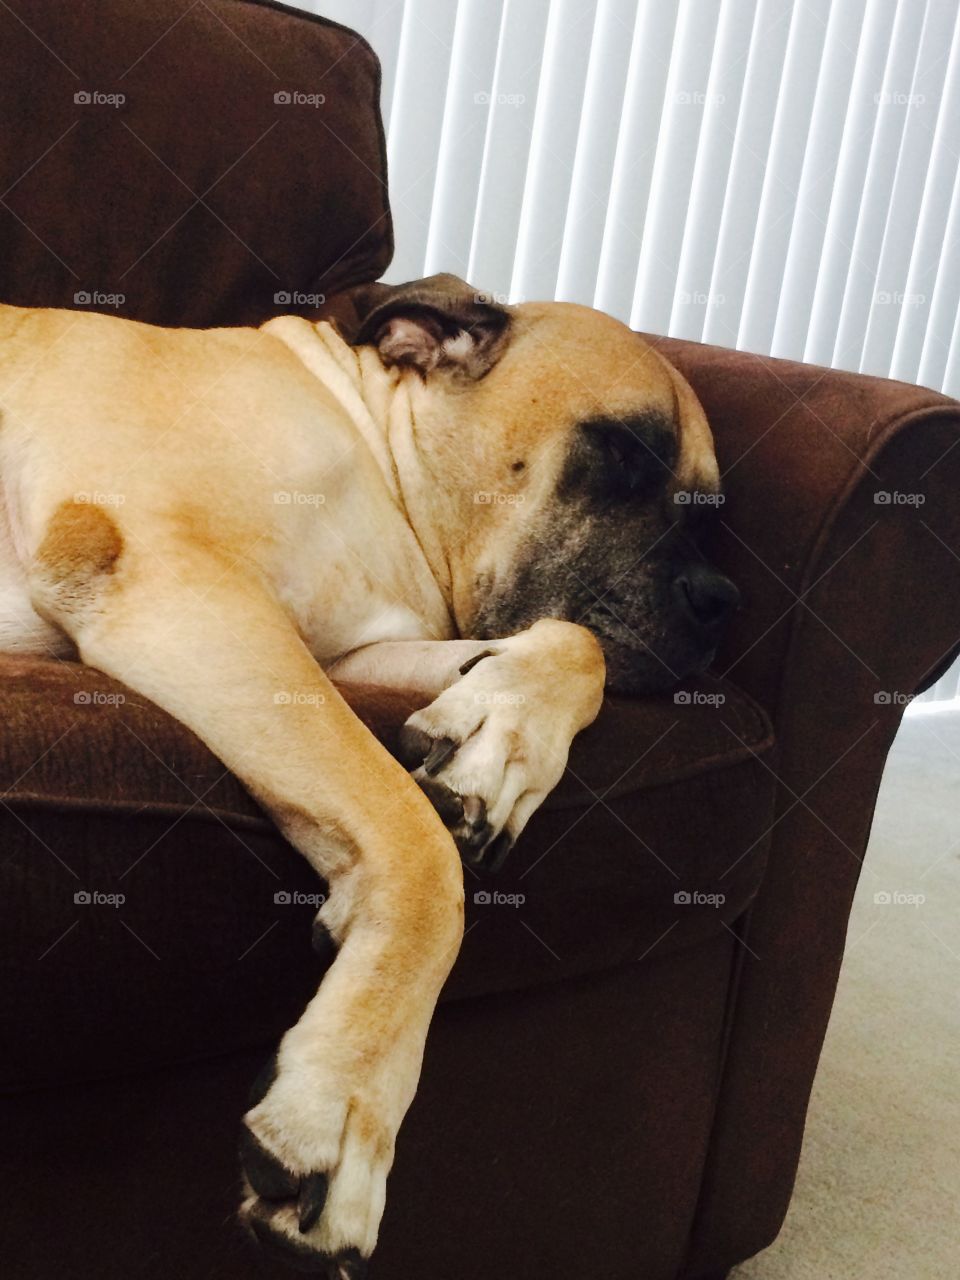 Big Dog, Little Sofa